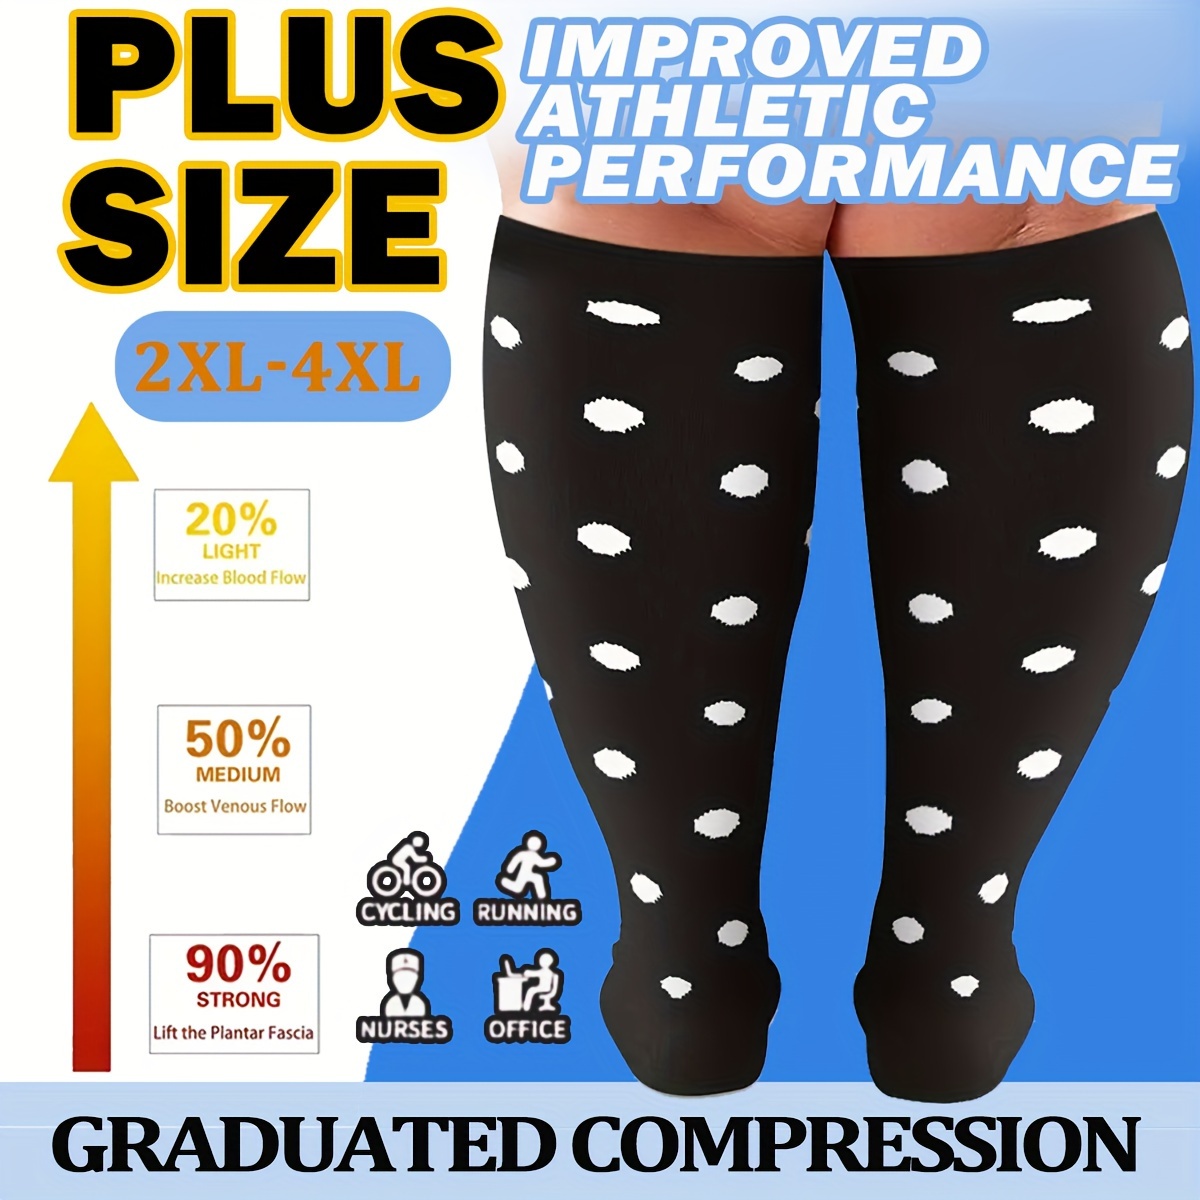 Medium Compression Stockings - Temu